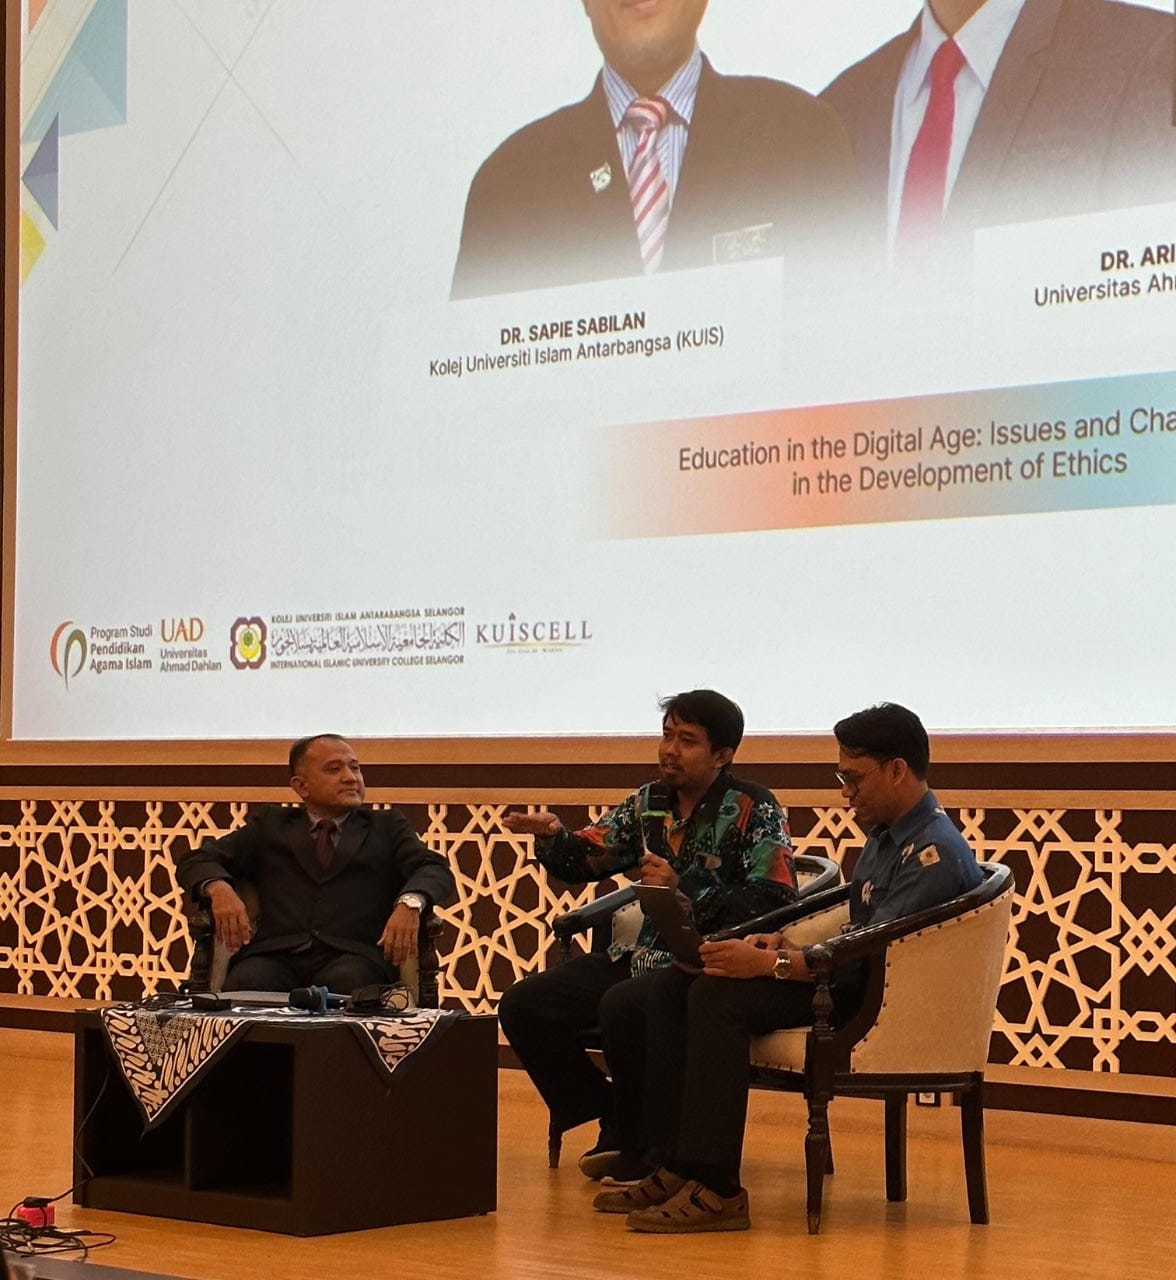 Dr. Arif Rahman dan Dr. Sapie Sabilan sebagai Keynote Speakers dalam seminar iSoT kerjasama antara Prodi PAI UAD dan Fakulti Pendidikan UIS, Selangor Malaysia